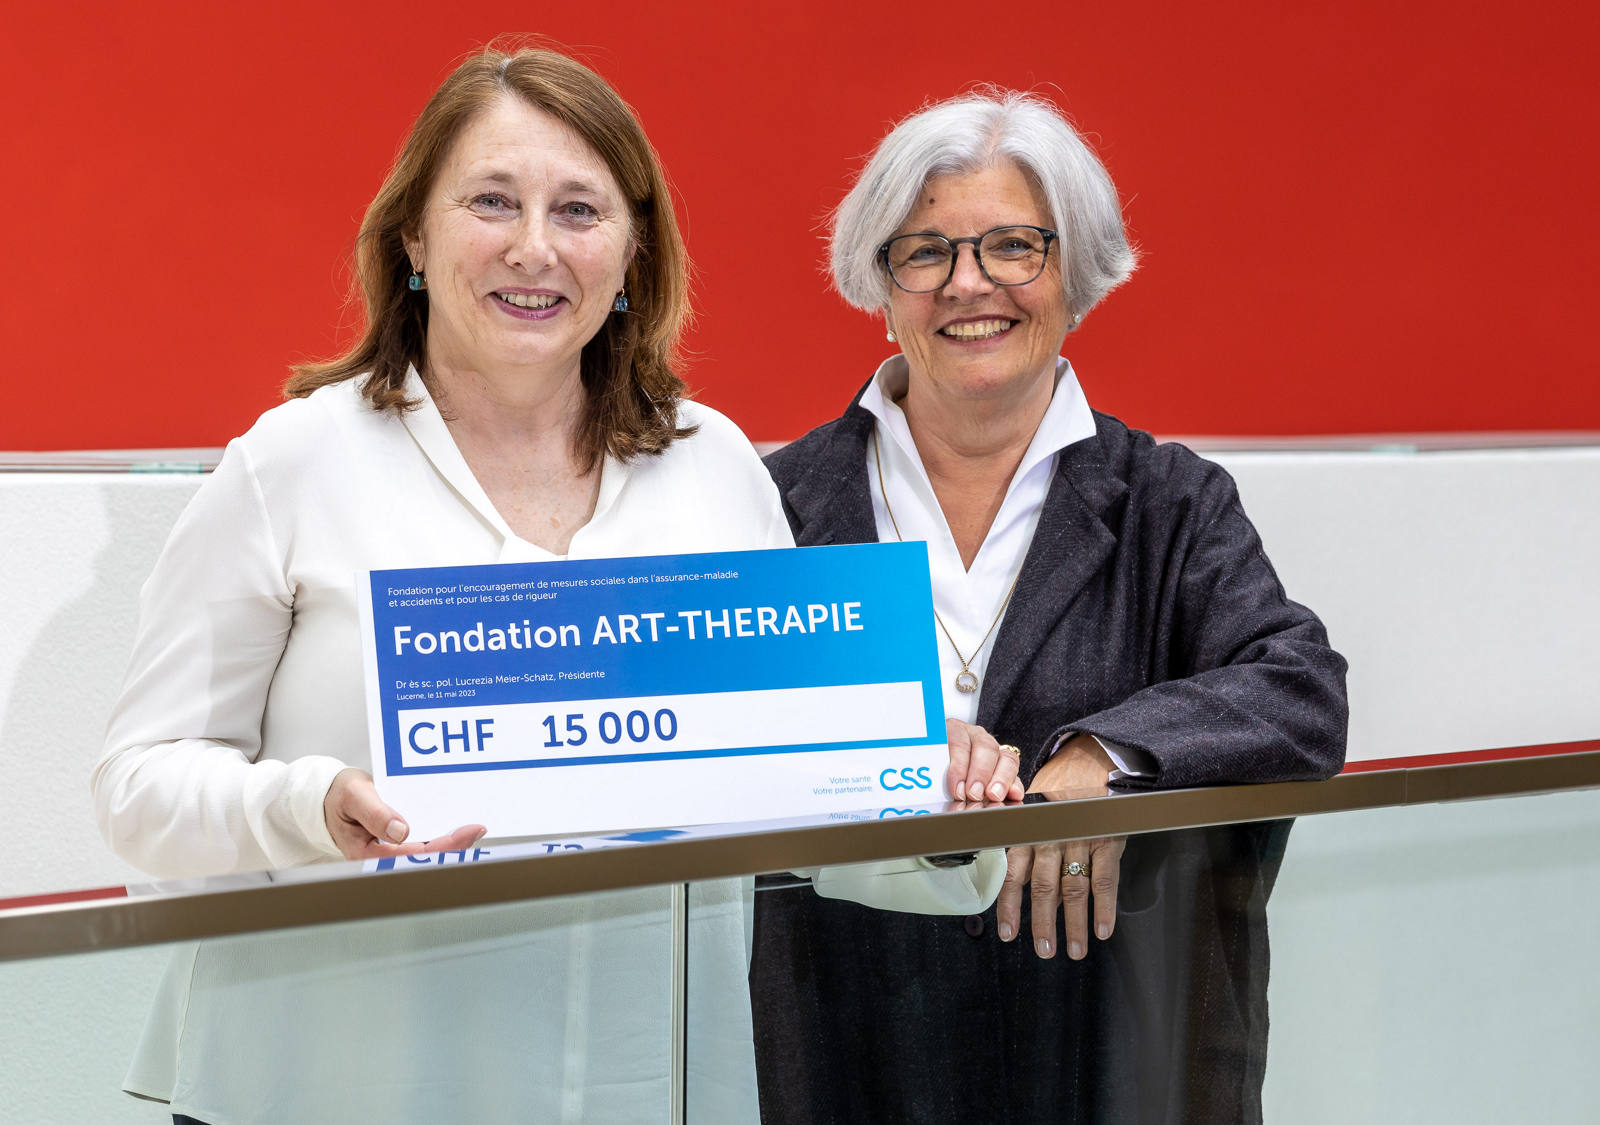 Premio 2023 della Fondazione: Fondation ART-THERAPIE